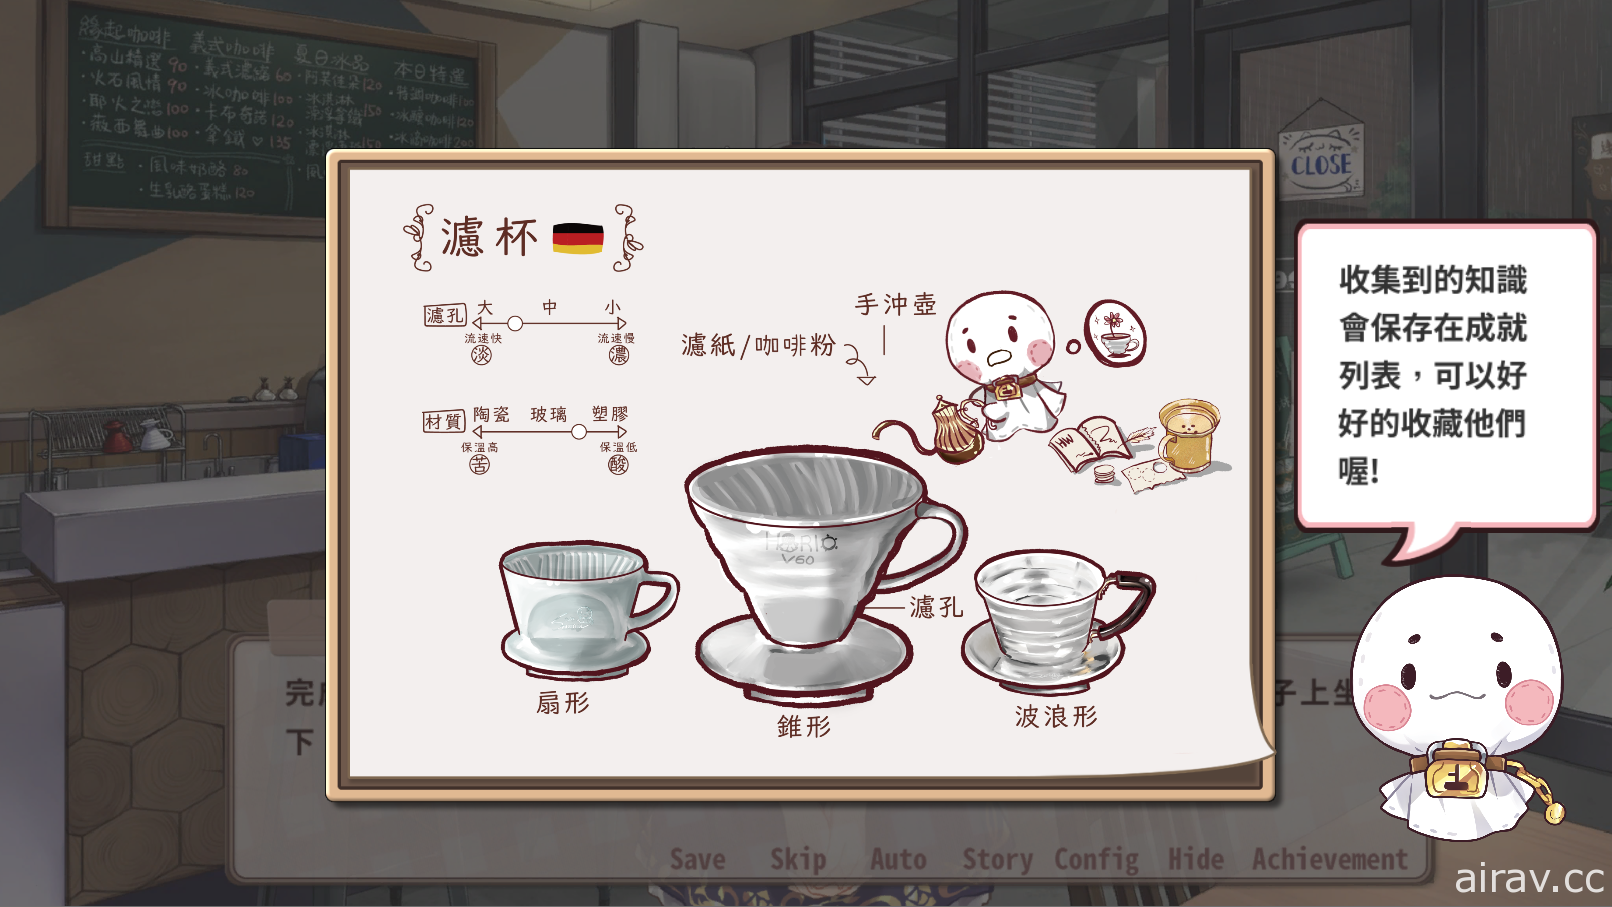 結合戀愛與推廣台灣咖啡文化 獨家專訪 AVG 新作《晴天咖啡館》研發團隊「遊戲貴族」